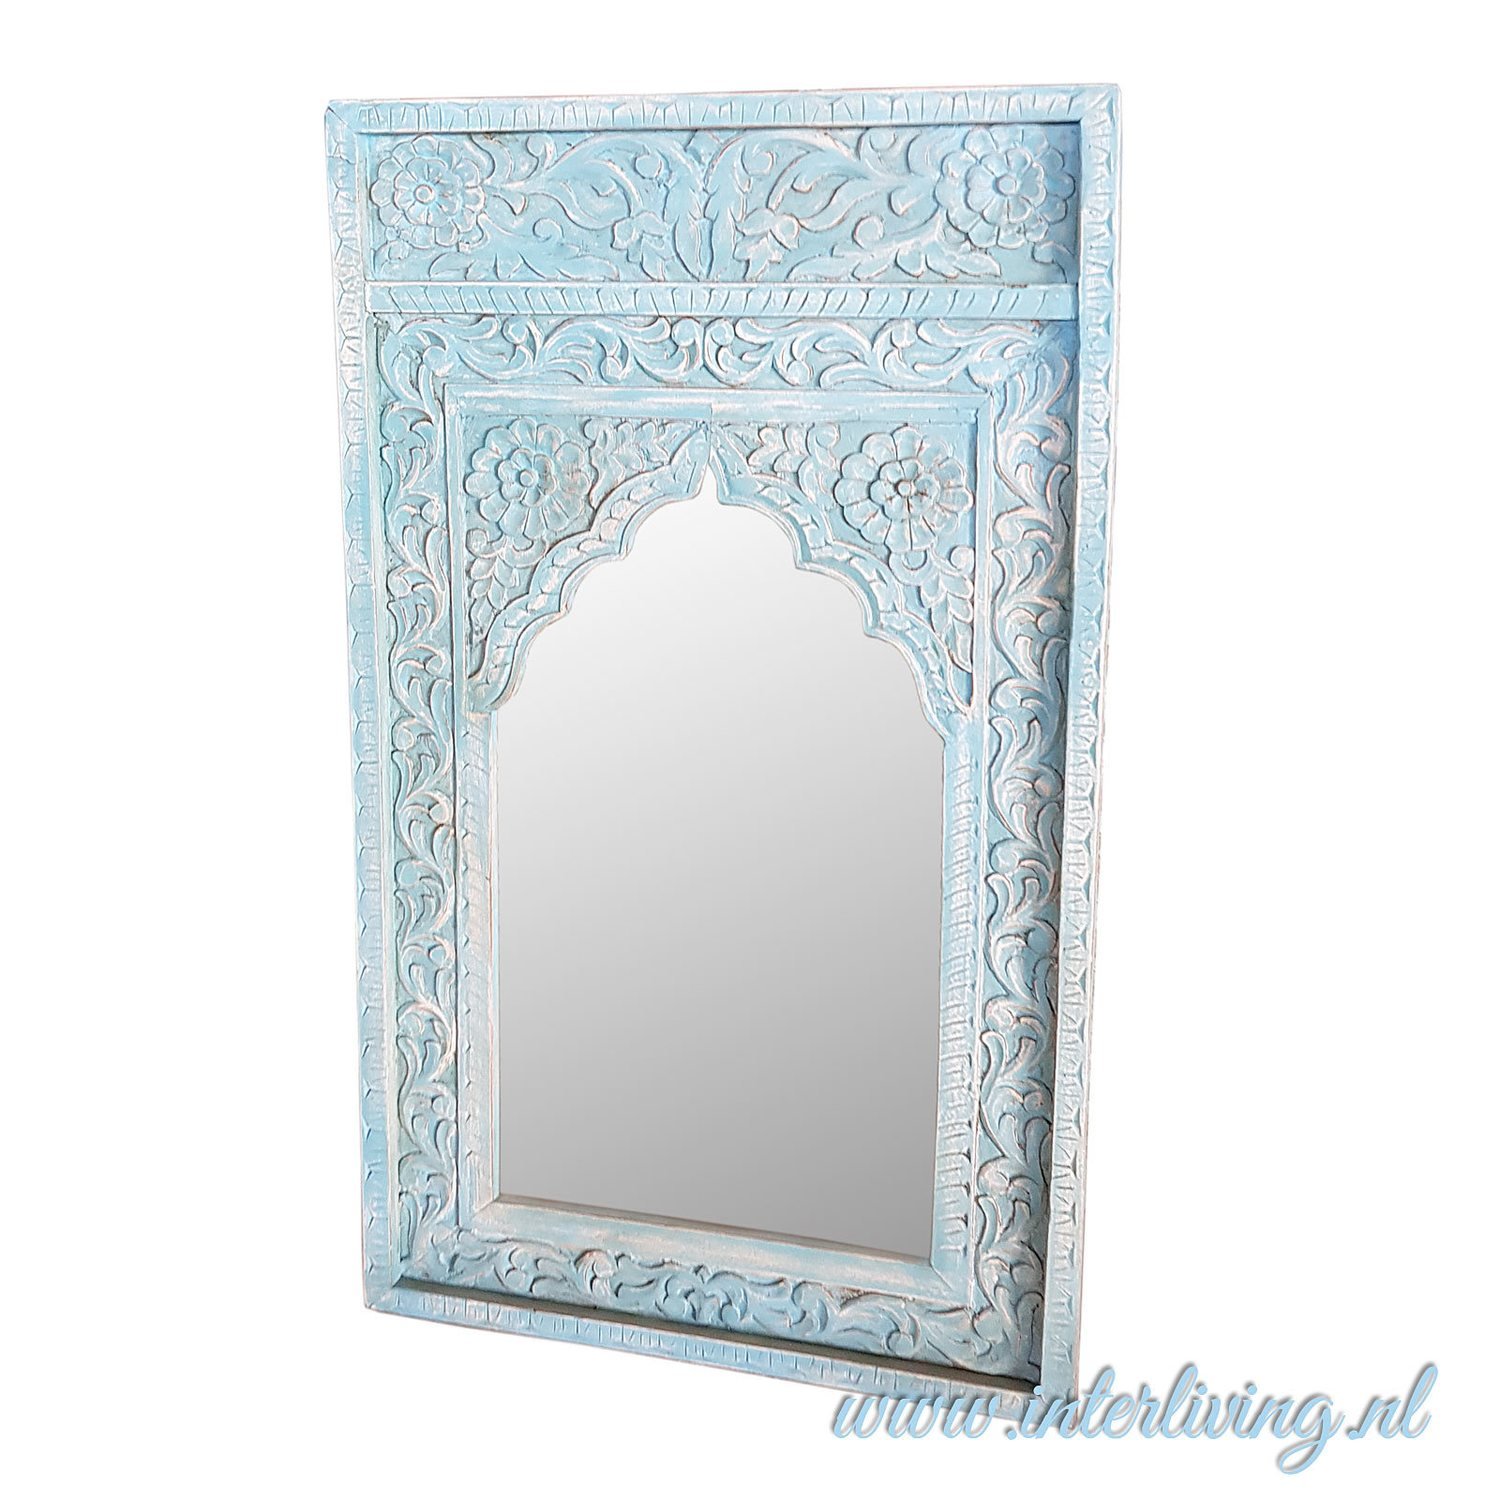 Marokkaanse stijl spiegel met oosterse oude houten lijst - bogen en  houtsnijwerk - vintage blue wash - 120 cm